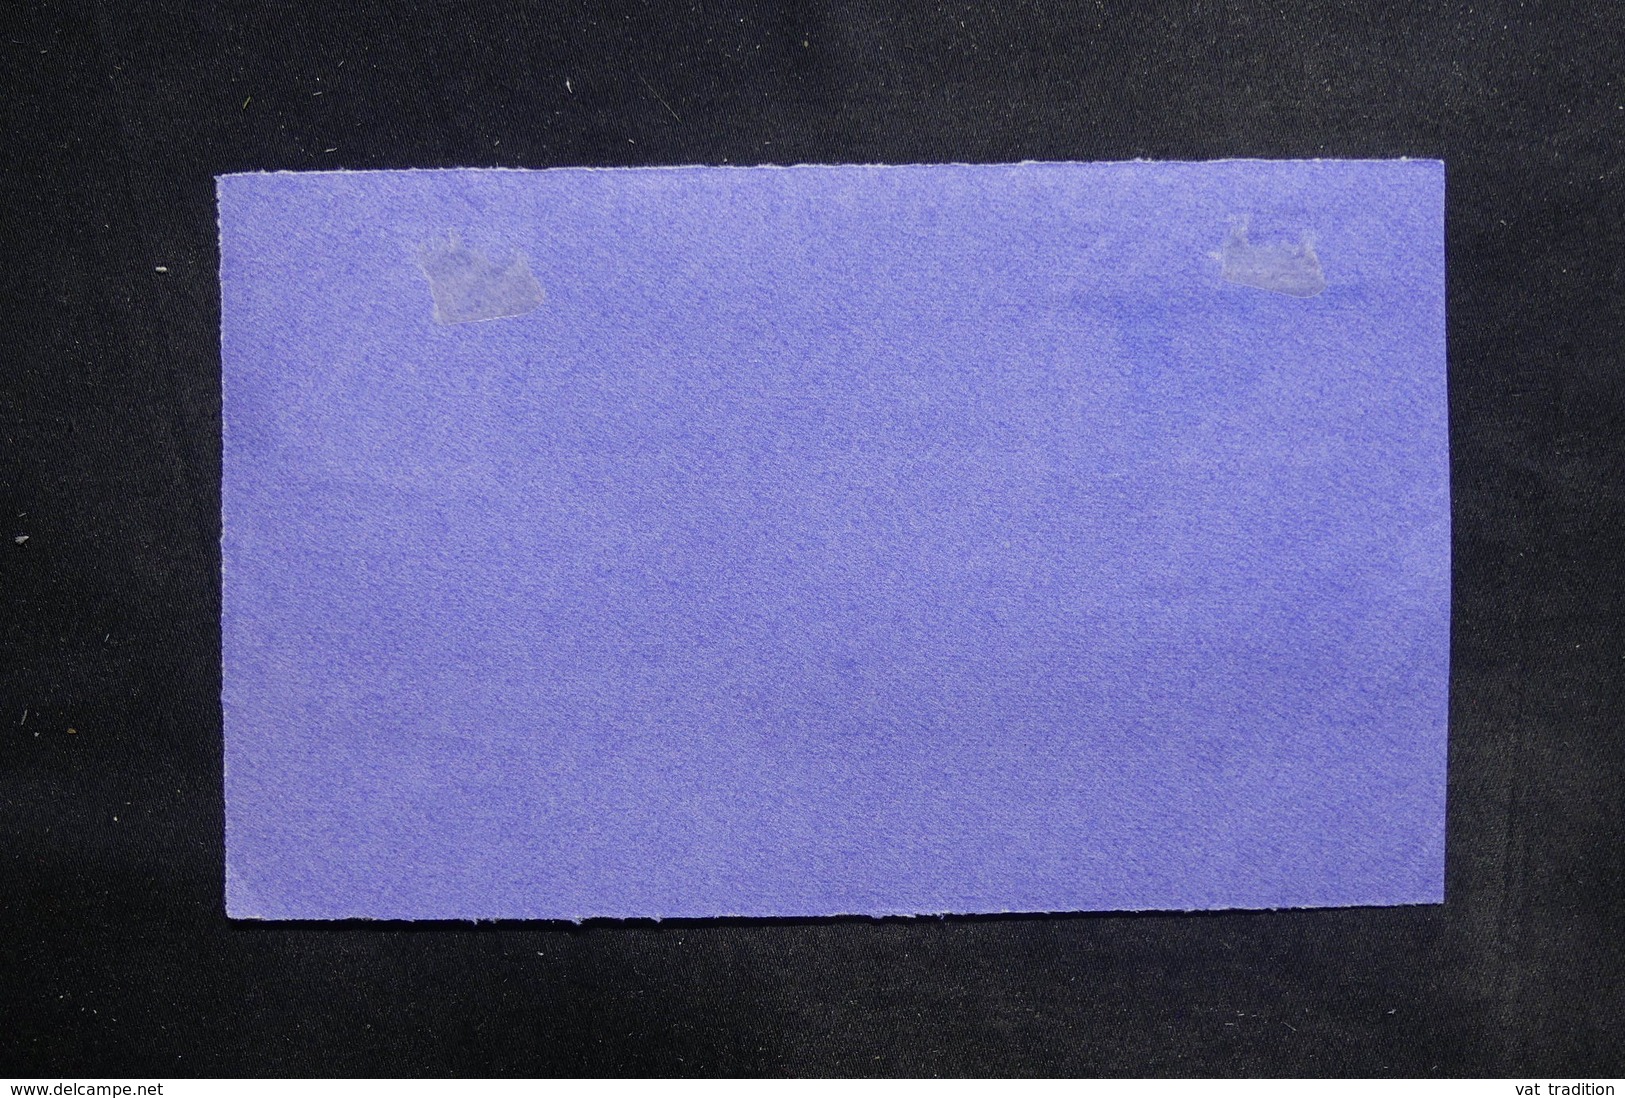 AUSTRALIE - Enveloppe ( Devant ) En Recommandé De Northbridge En 1926 Pour La France - L 36329 - Briefe U. Dokumente